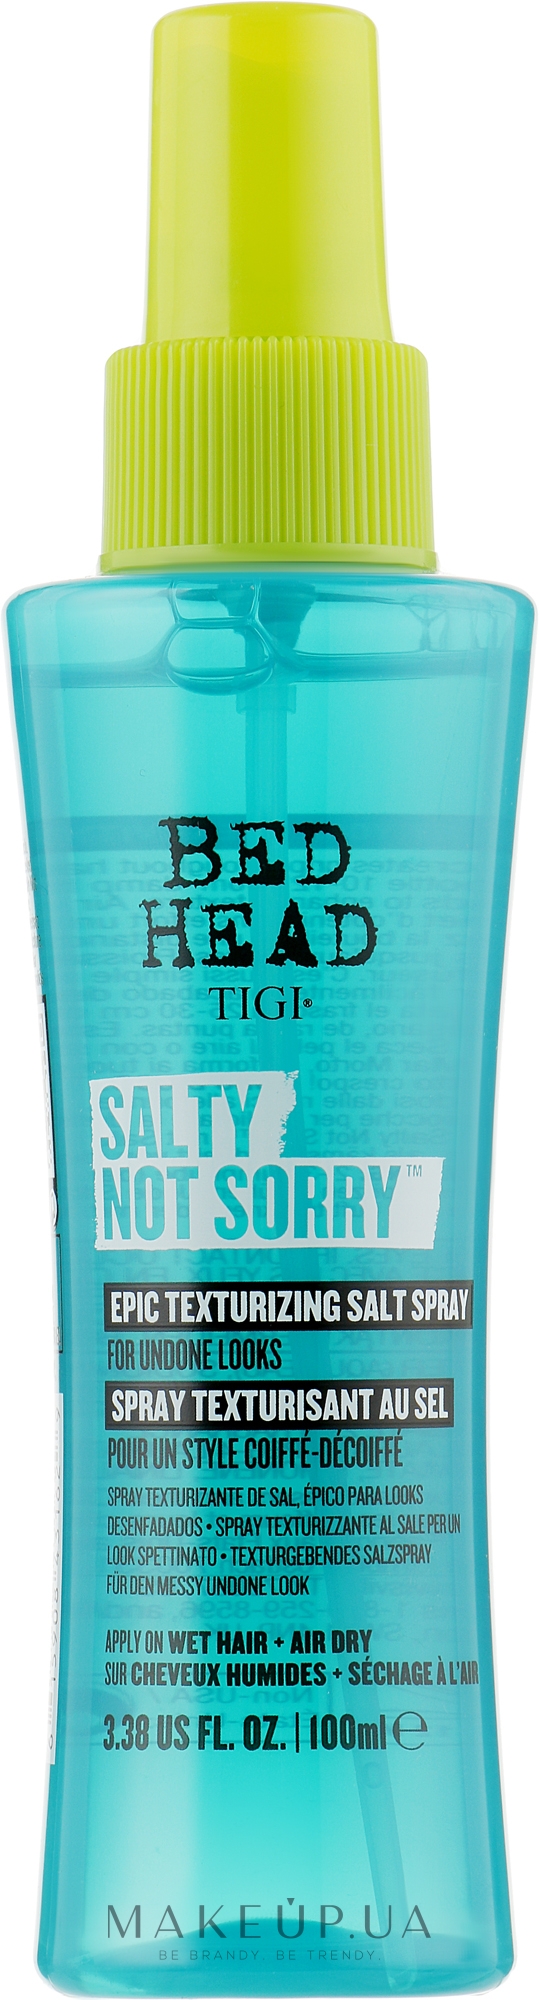 Текстурирующий солевой спрей для волос - Tigi Bed Head Salty Not Sorry Texturizing Salt Spray  — фото 100ml